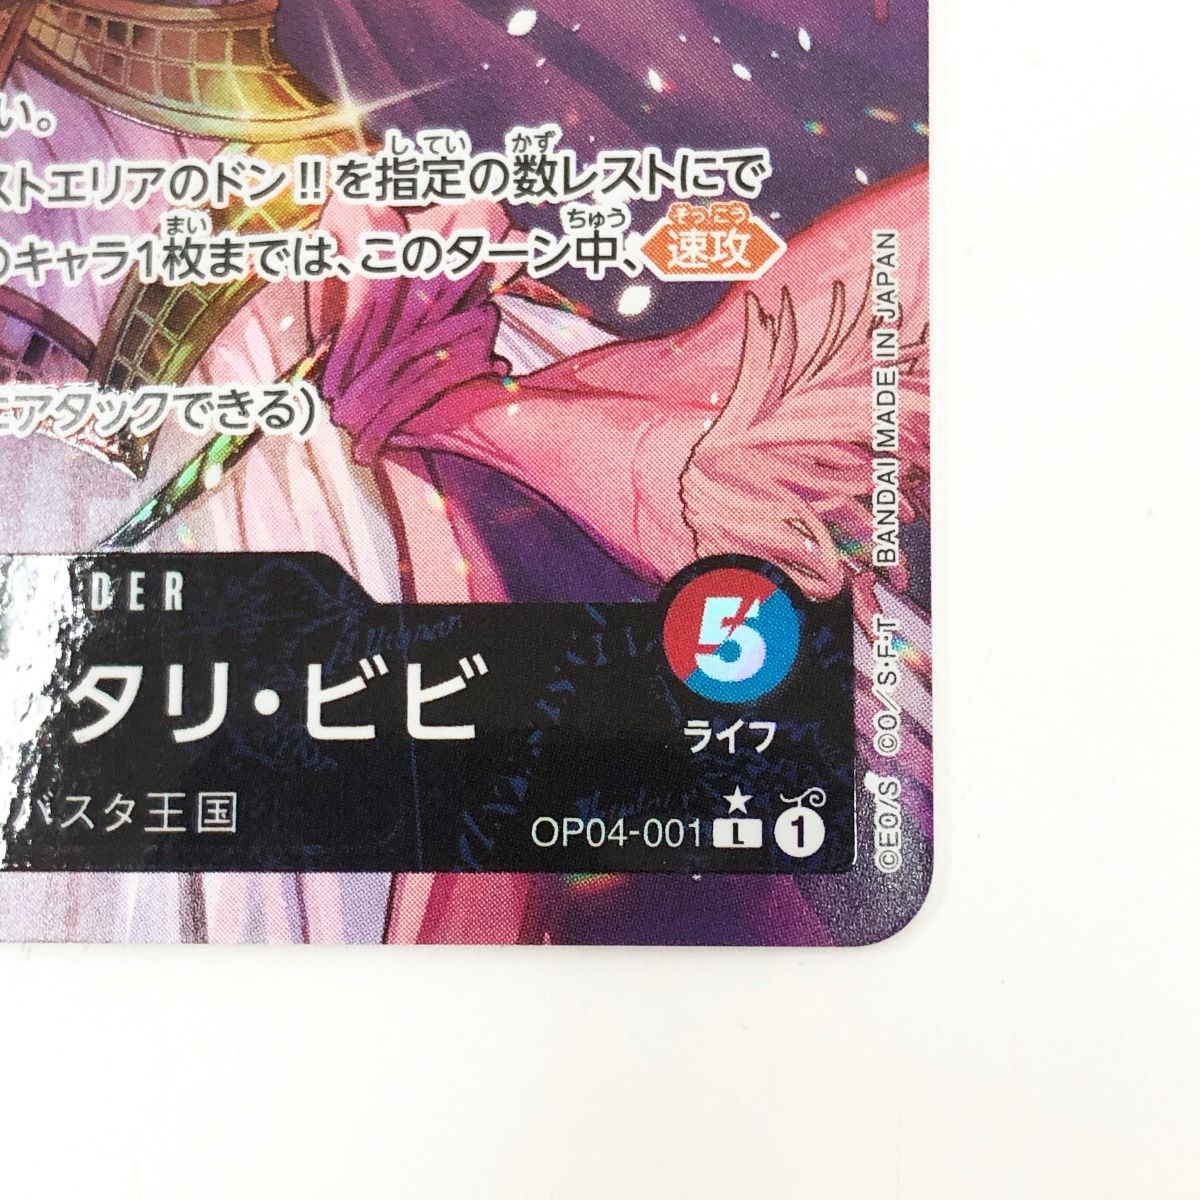 〇〇 ワンピースカード ネフェルタリビビ OP04/001P1 - メルカリ